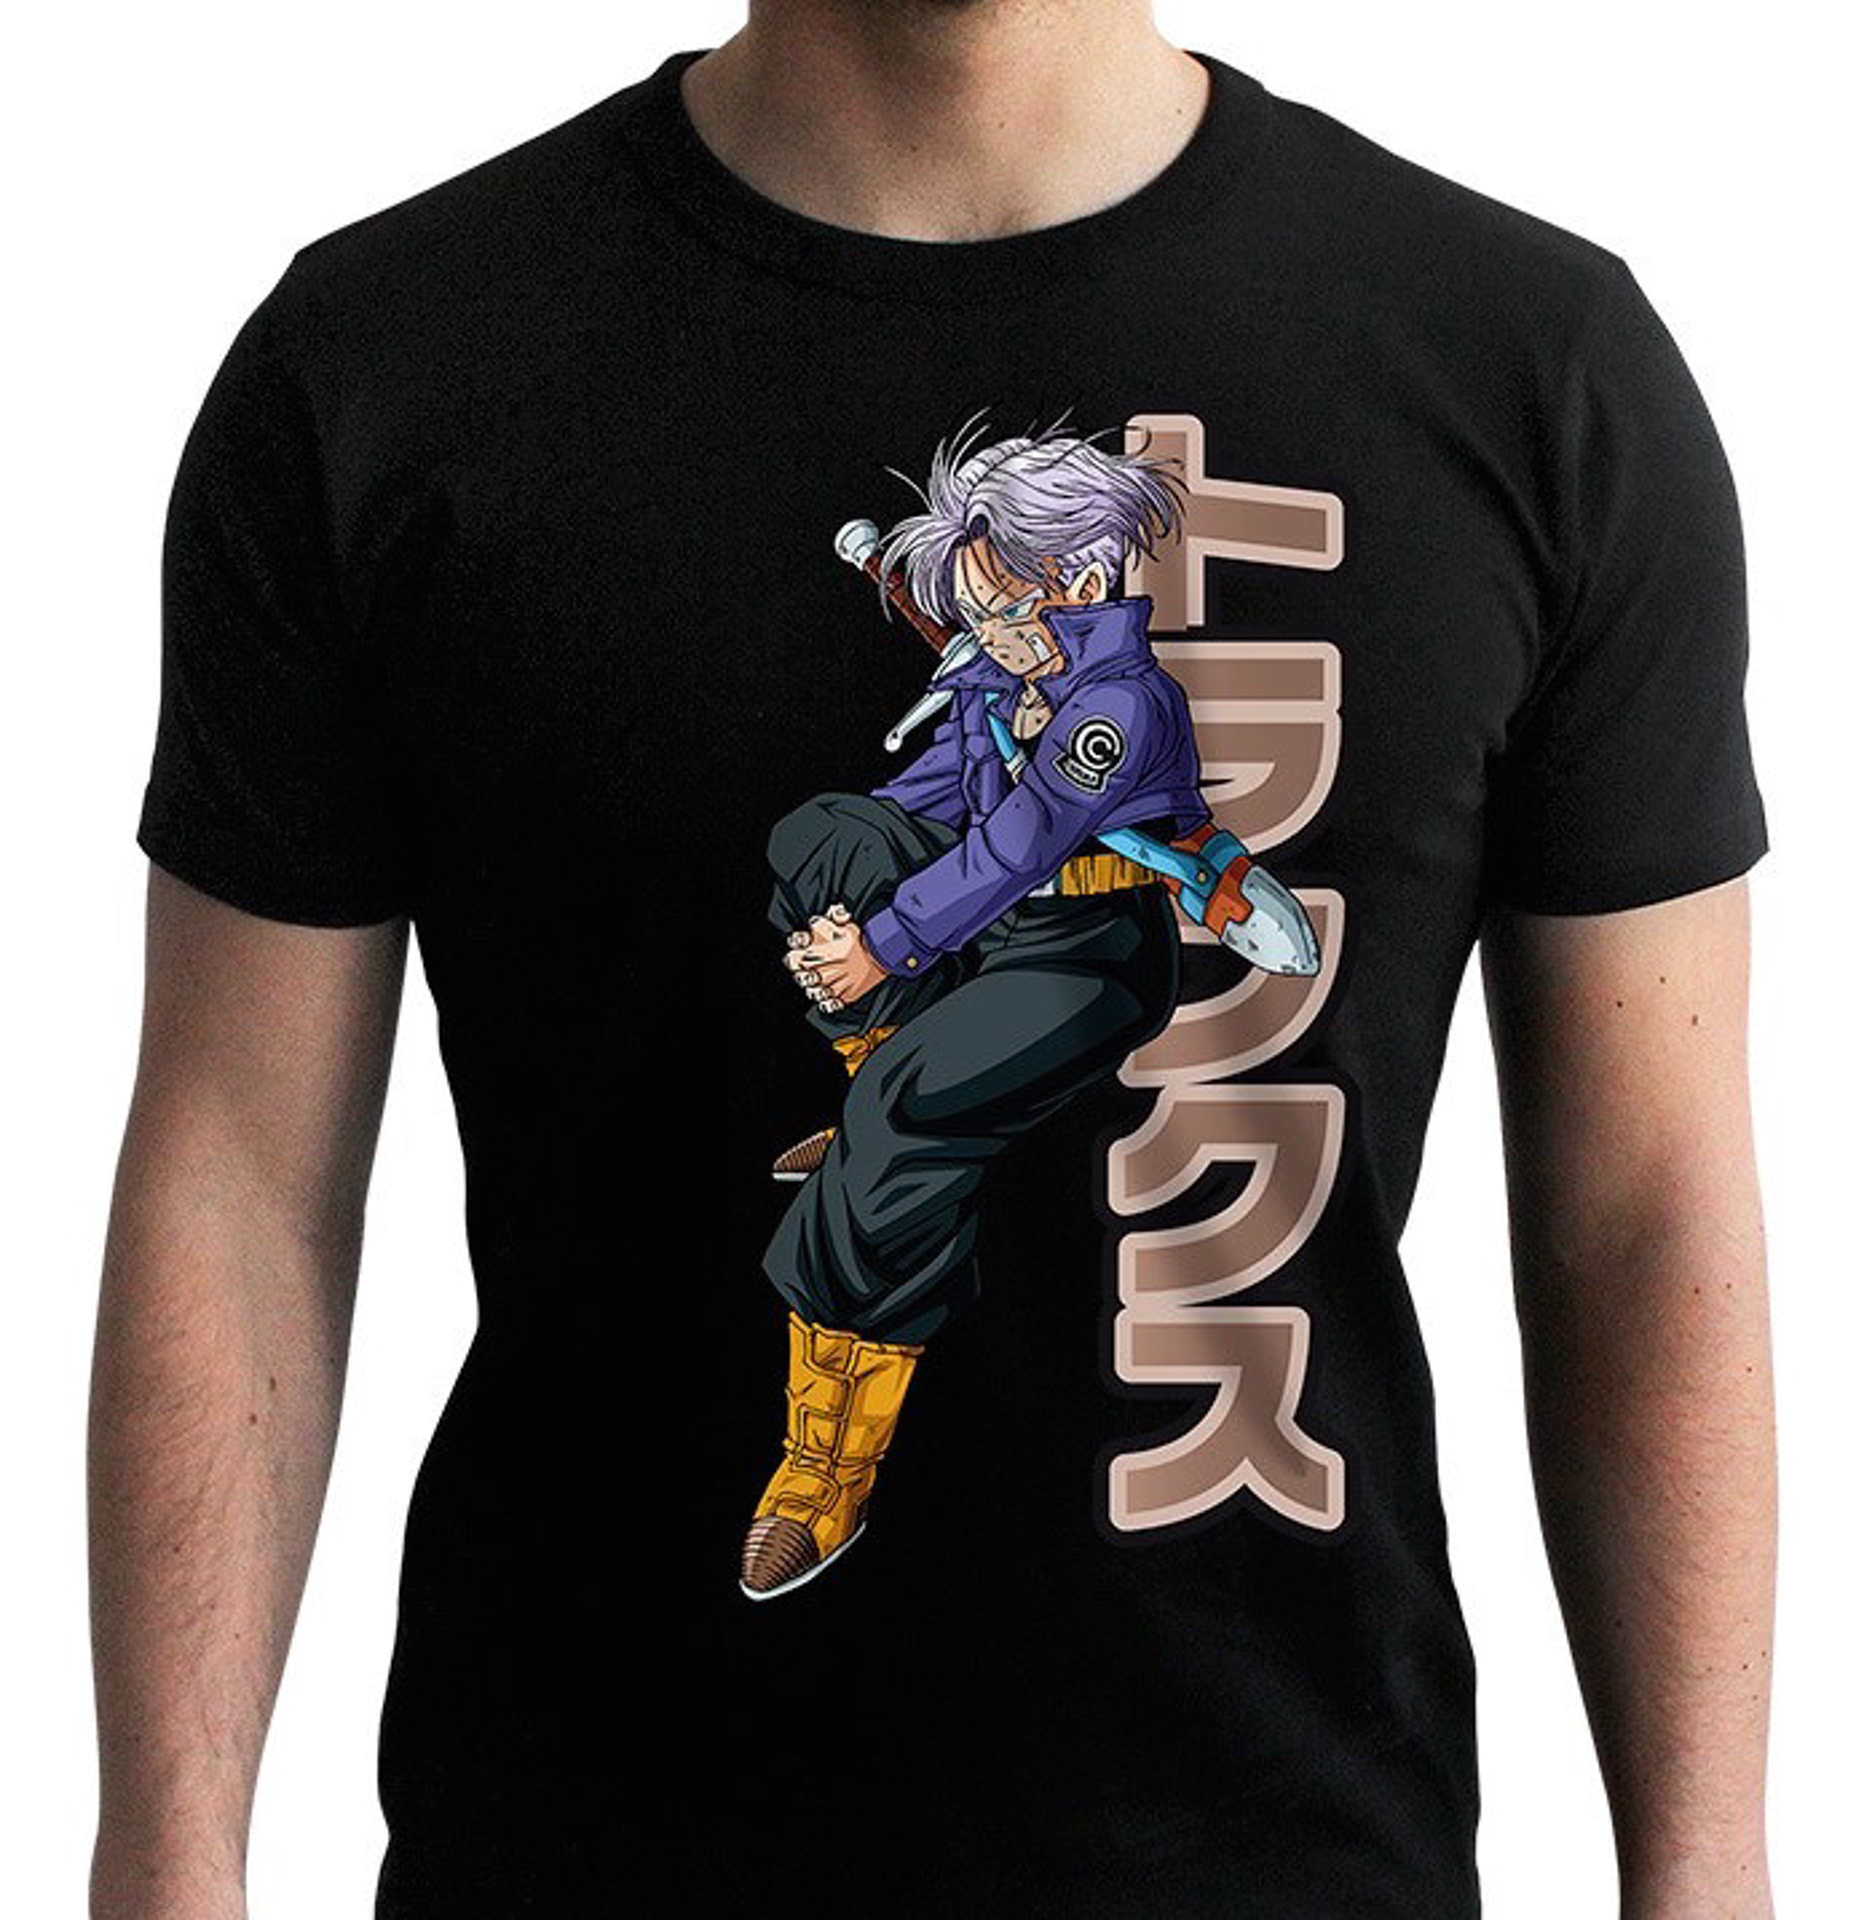 § Dragon Ball - Trunks Black Man T-Shirt S